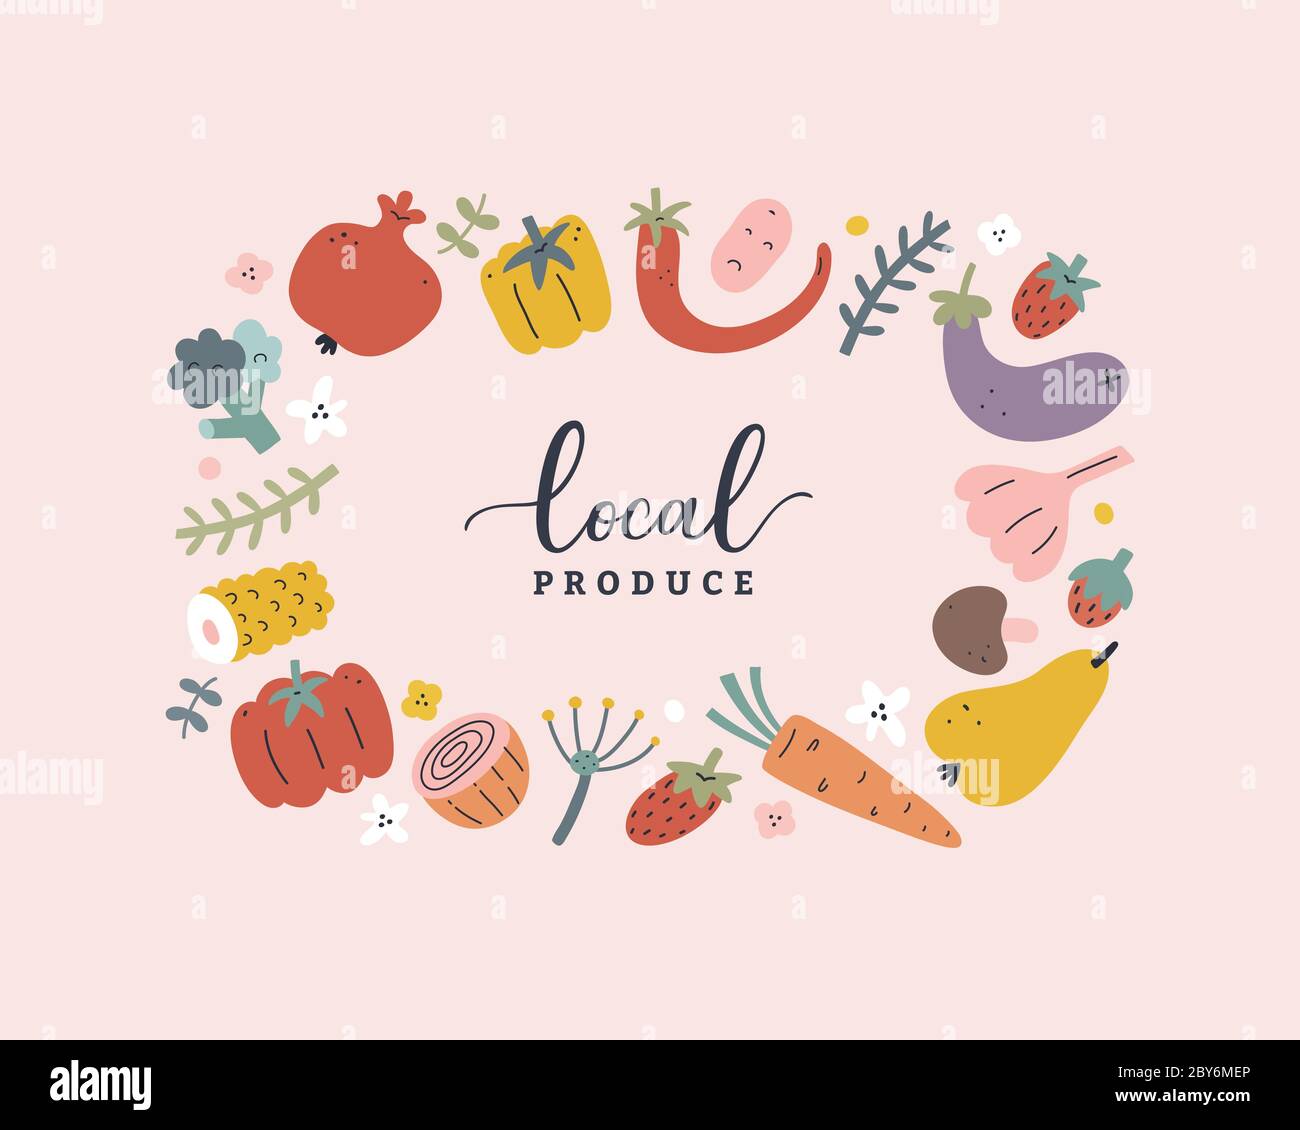 Gemüse und Obst Vektor-Vorlage, modernes Design Kranz Rand mit handgezeichneten Illustrationen von Lebensmitteln, Vektor-Rahmen mit Kopierraum, erdige Farben Stock Vektor